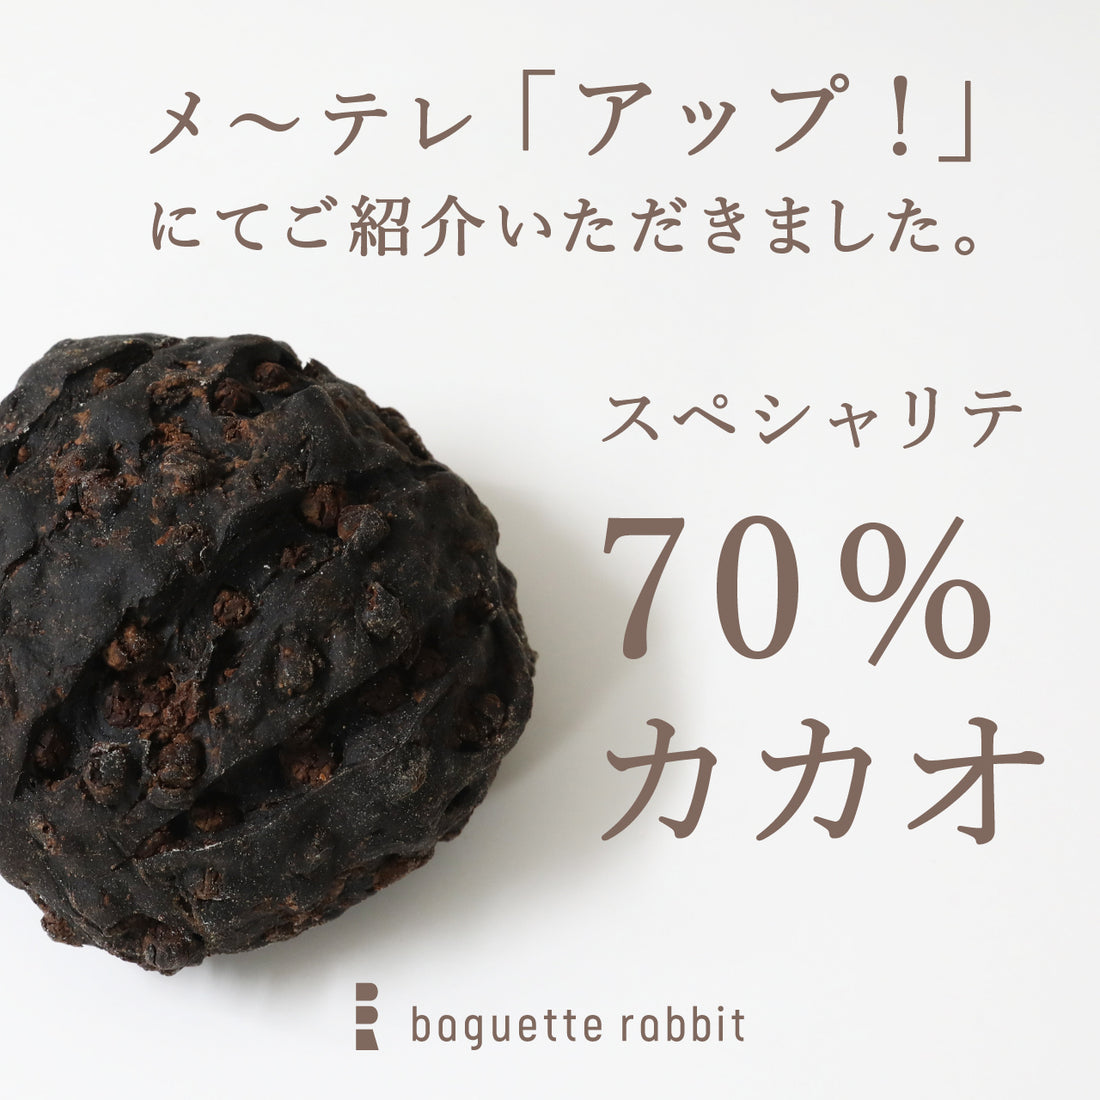 【メディア情報】baguette rabbit「スペシャリテ 70％カカオ」をメ〜テレ「アップ！」にてご紹介いただきました